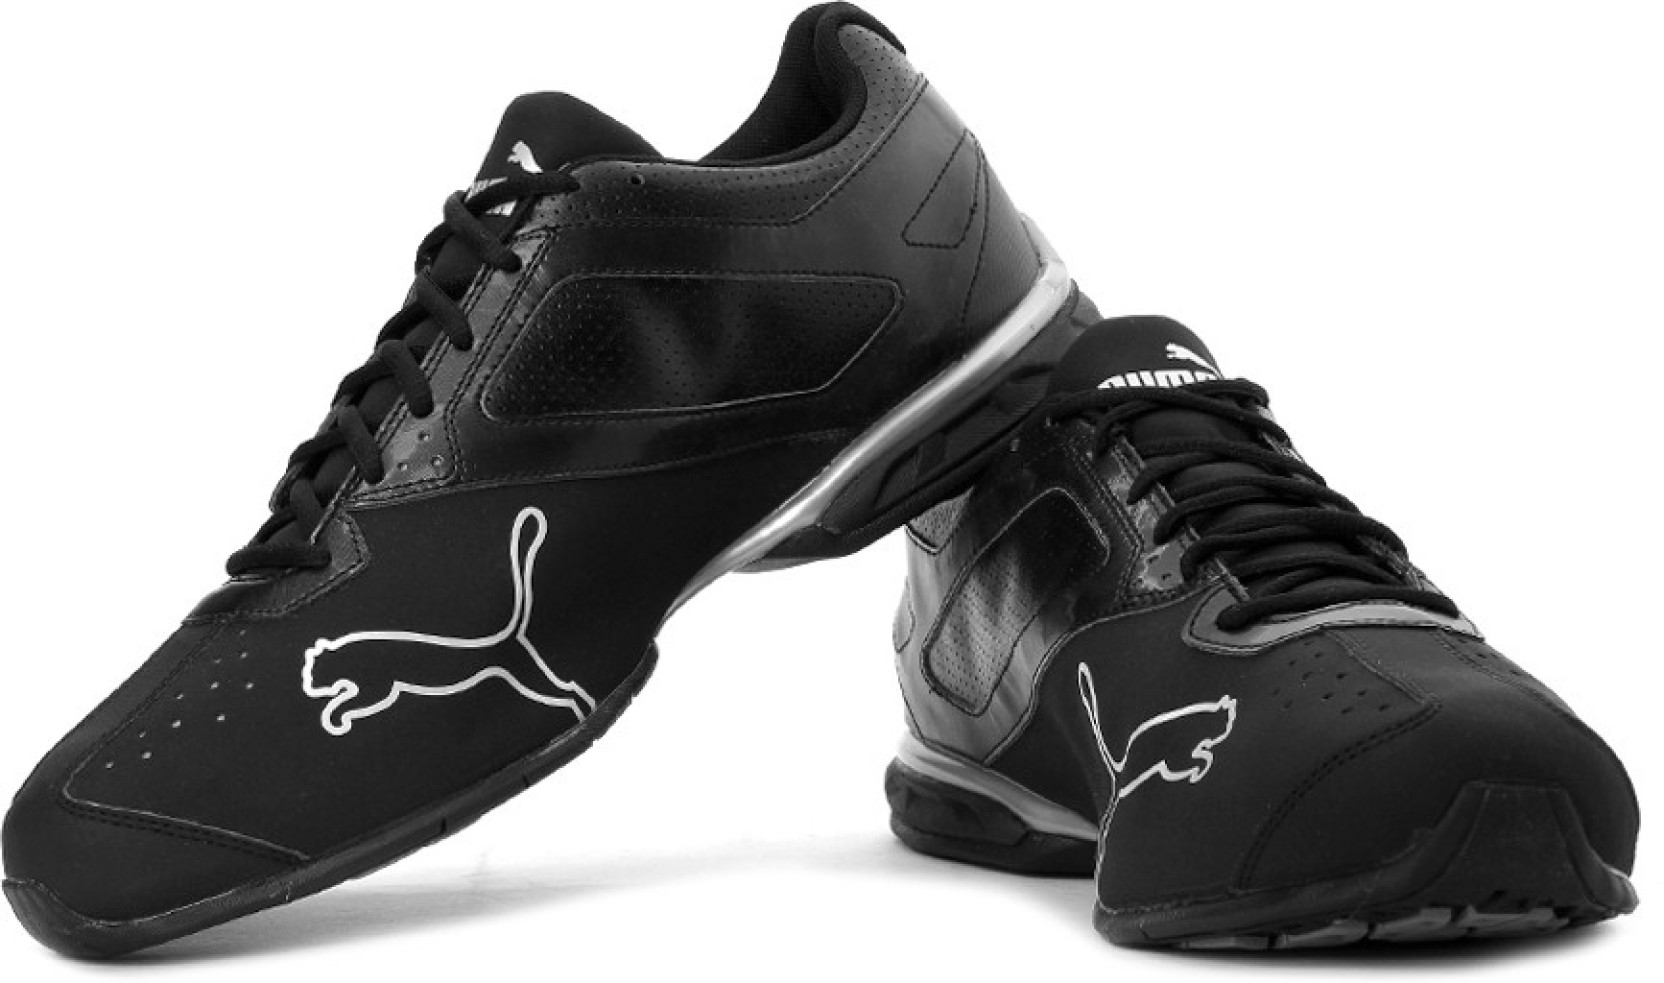 Puma Tazon 5 NM Running Shoes - Buy Black, Puma Silver Color Puma Tazon ...